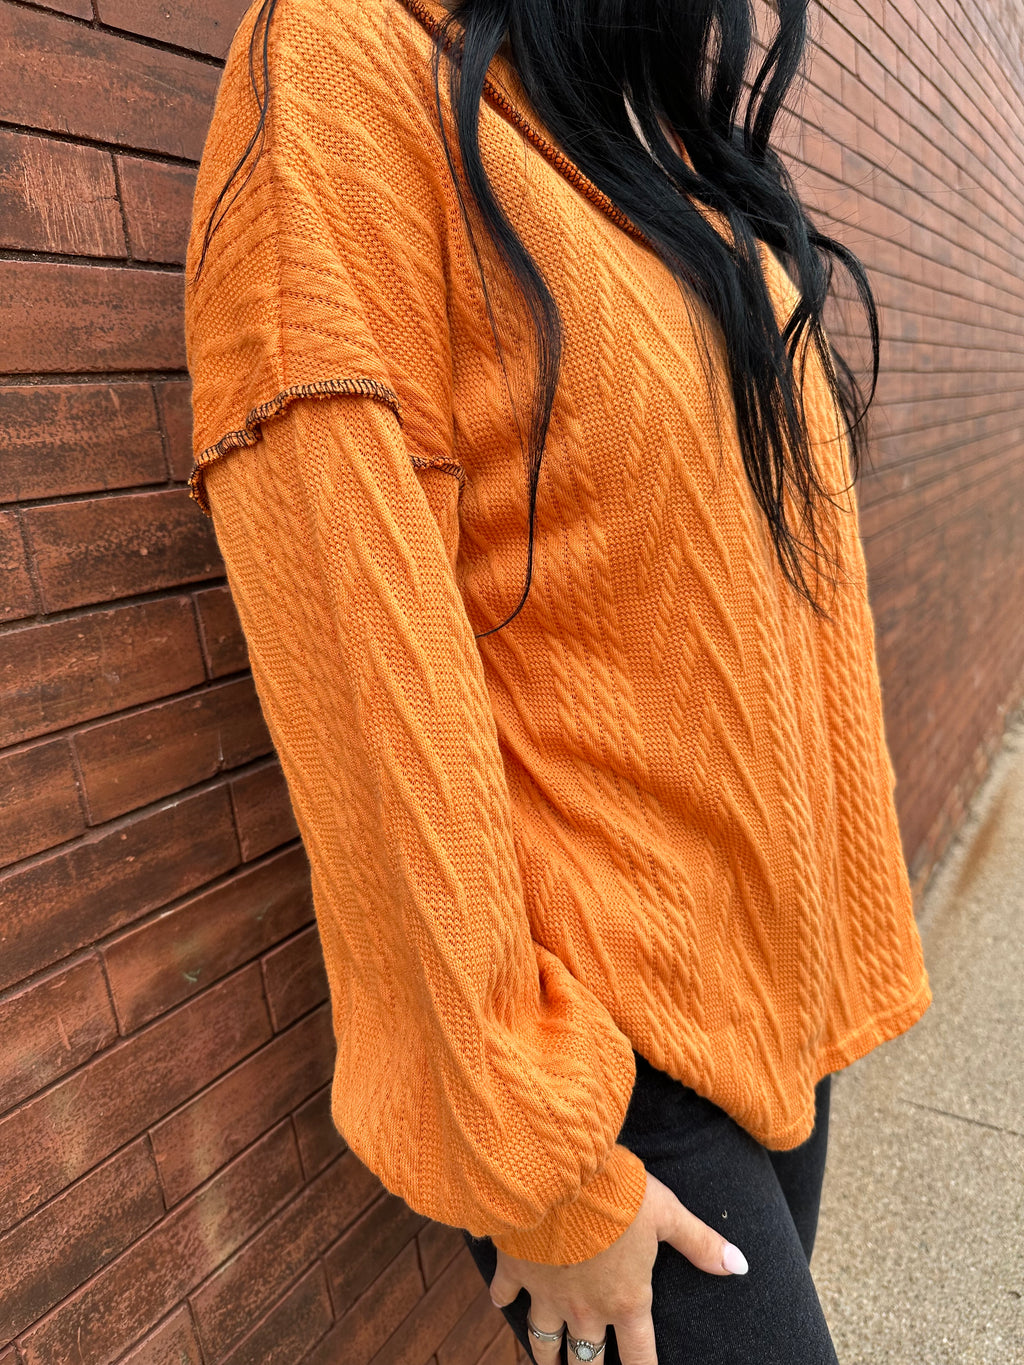 Textured Orange Knit Top